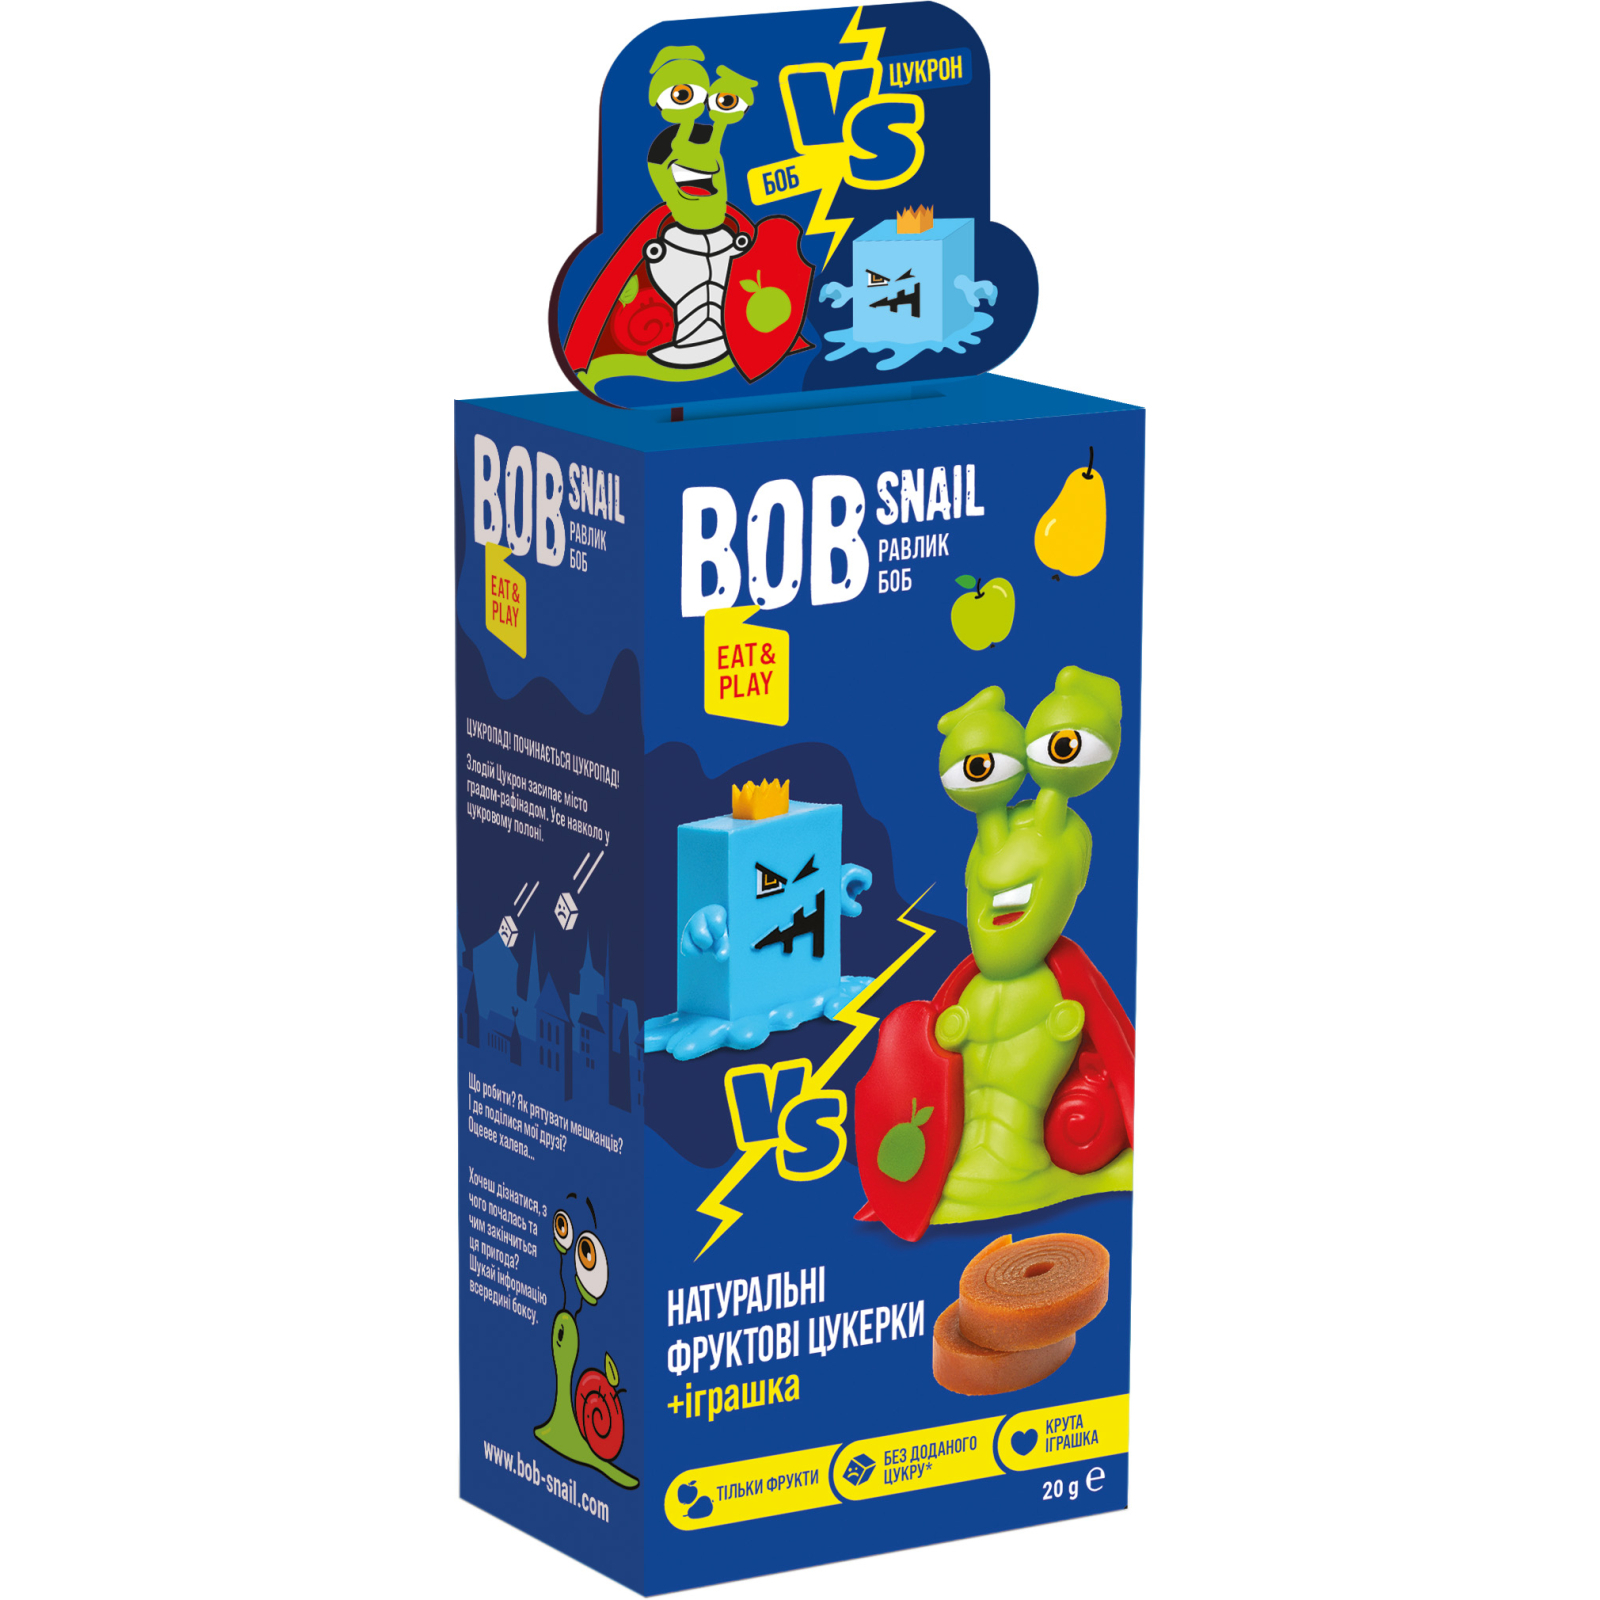 Конфета Bob Snail Eat&Play яблочно-грушевые + игрушка 20 г (4820219342748)